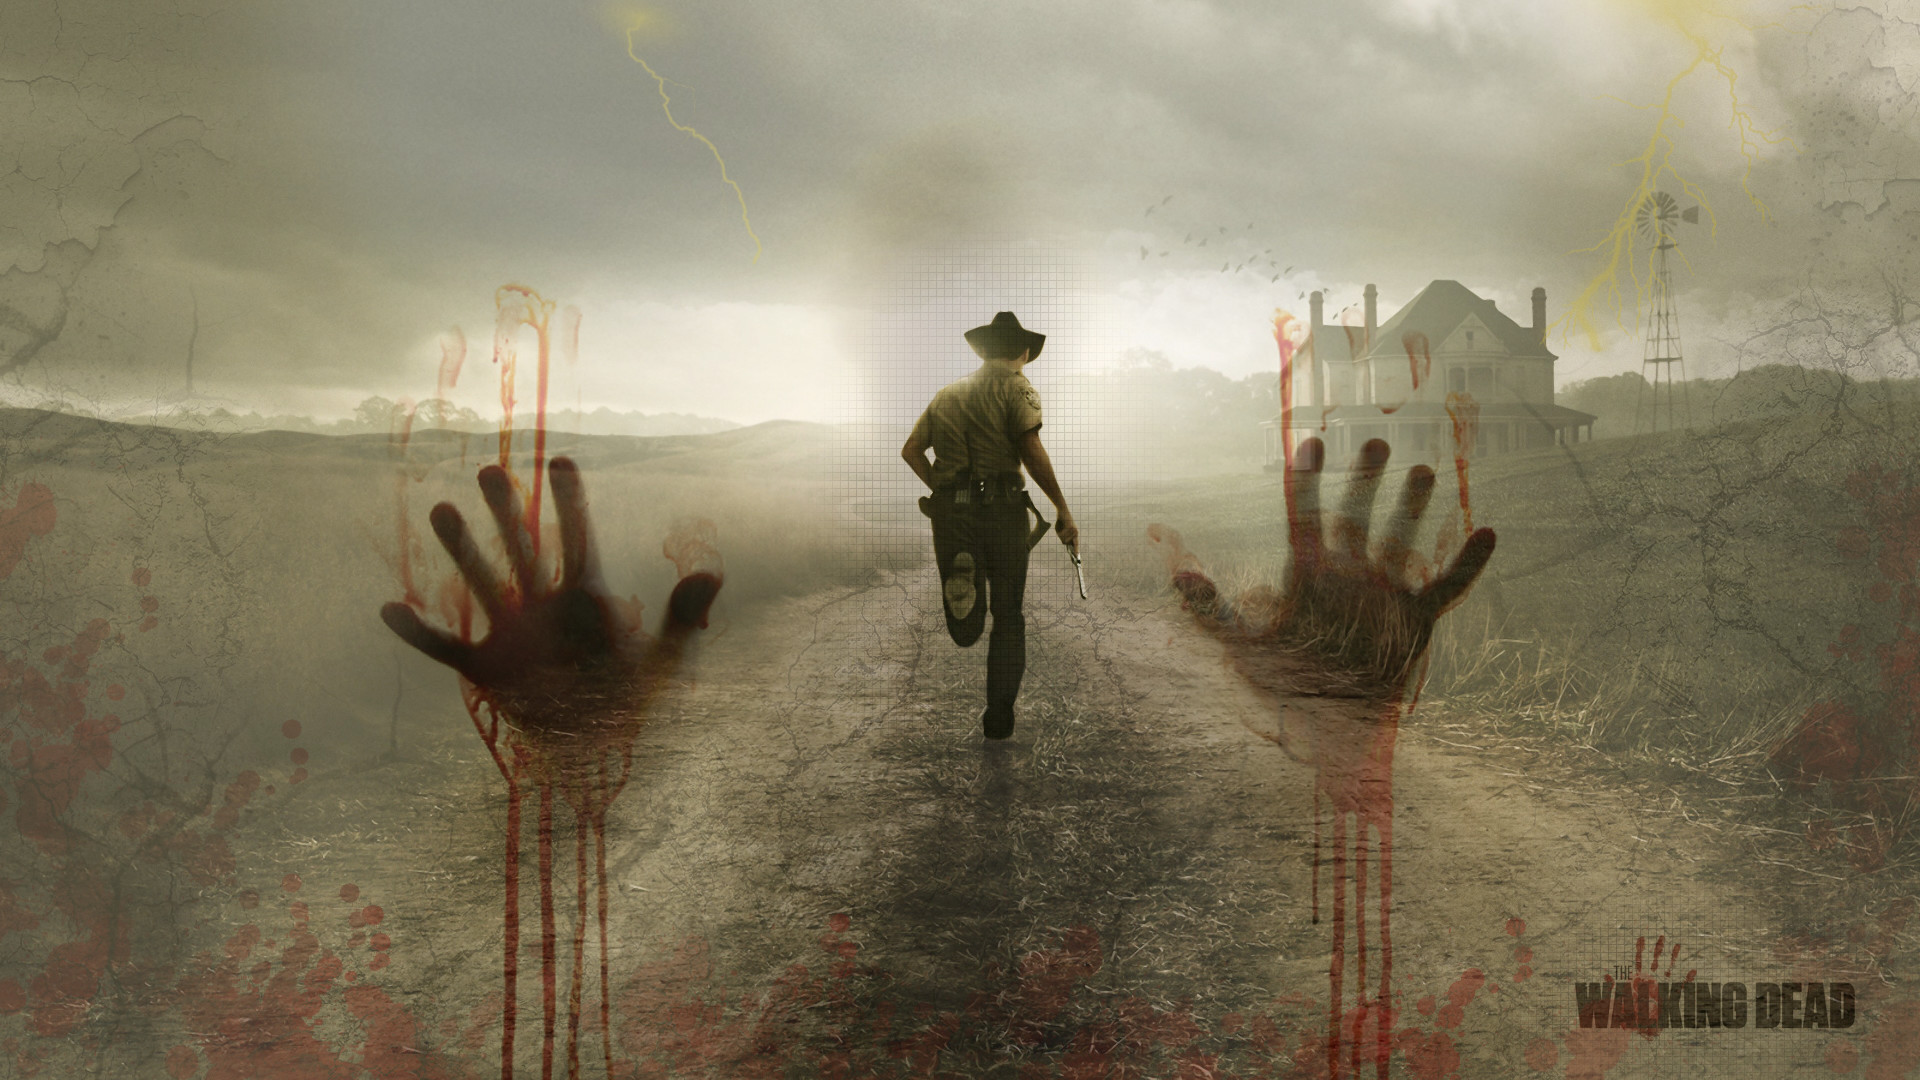 The Walking Dead Wallpaper Image